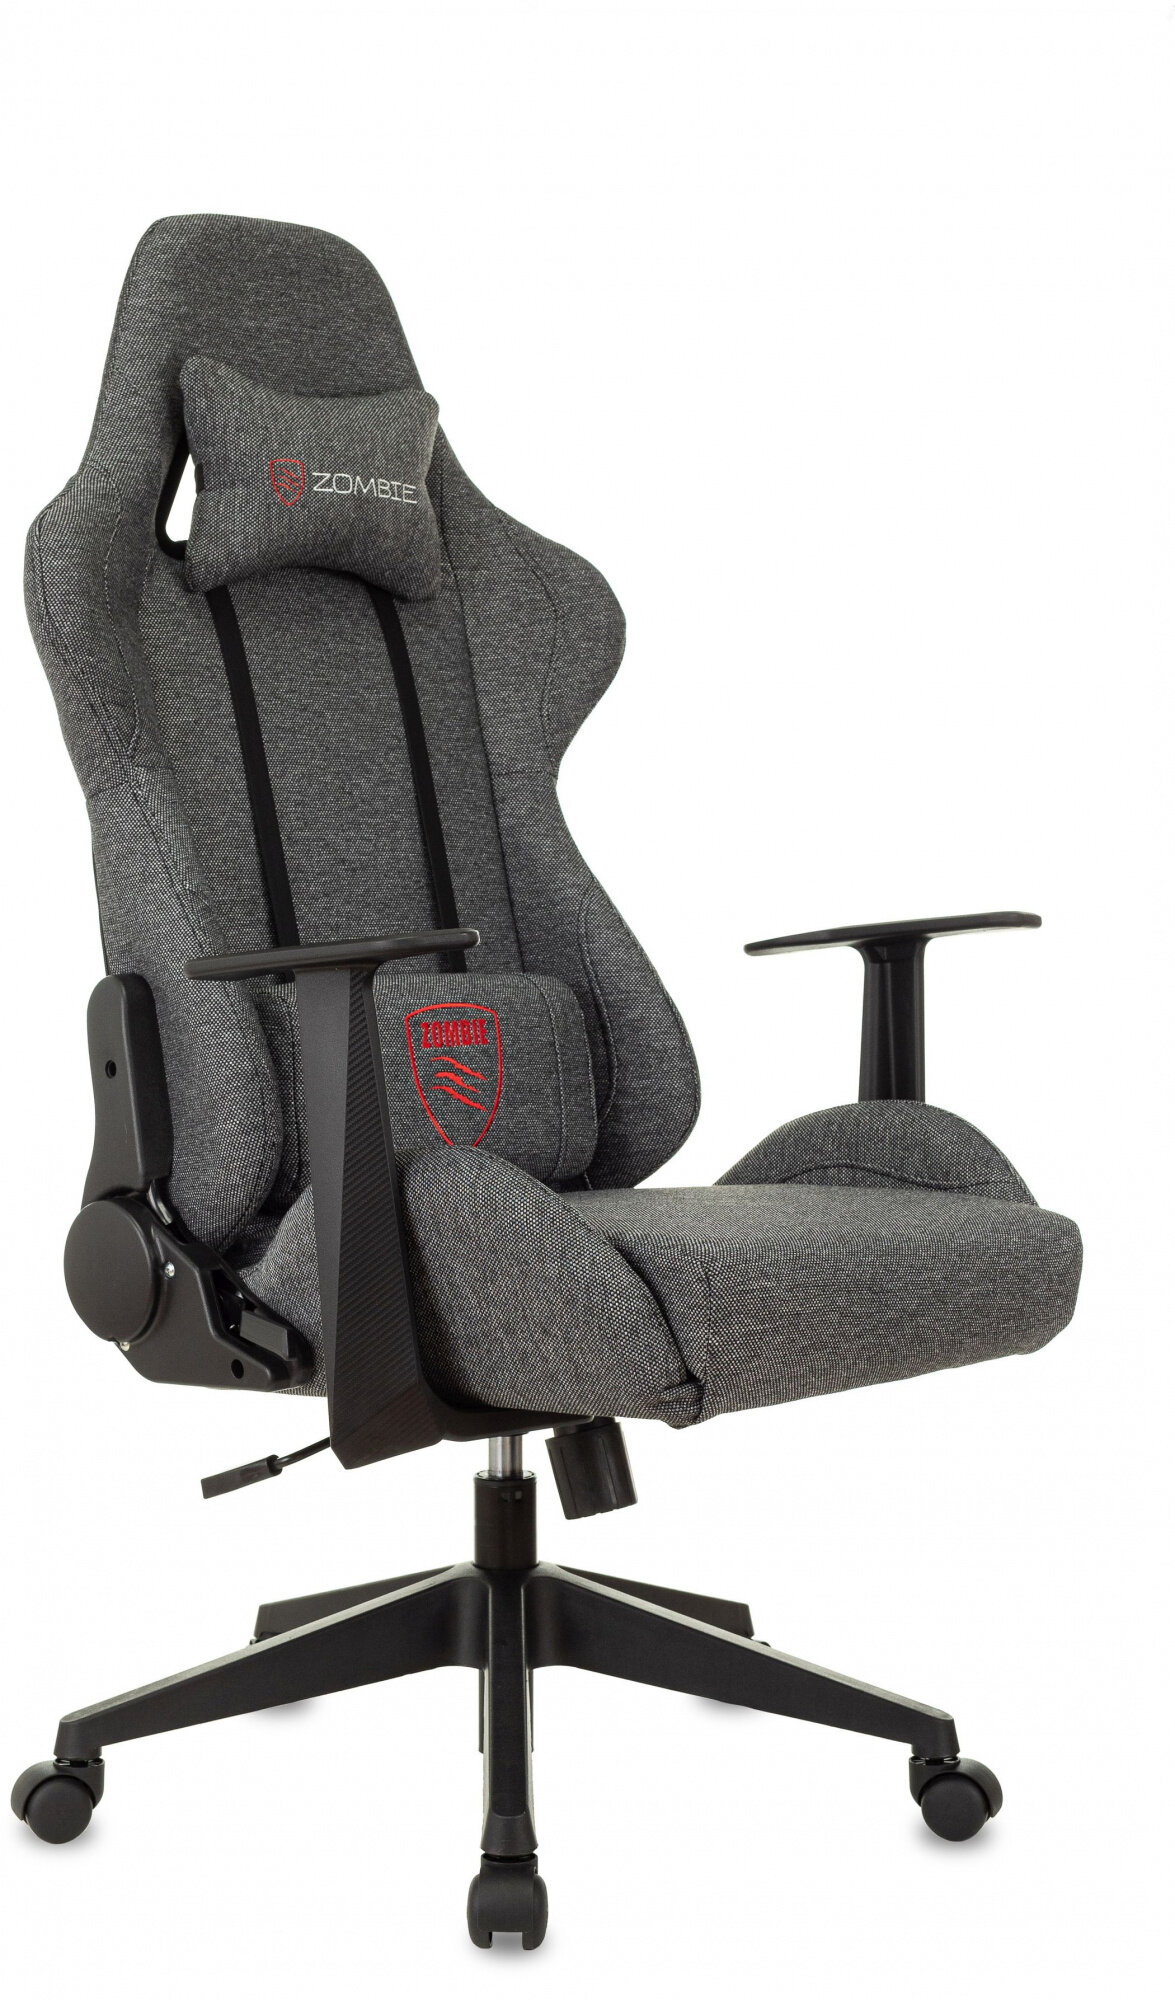 Компьютерное кресло Zombie Neo игровое, обивка: текстиль, цвет: серый